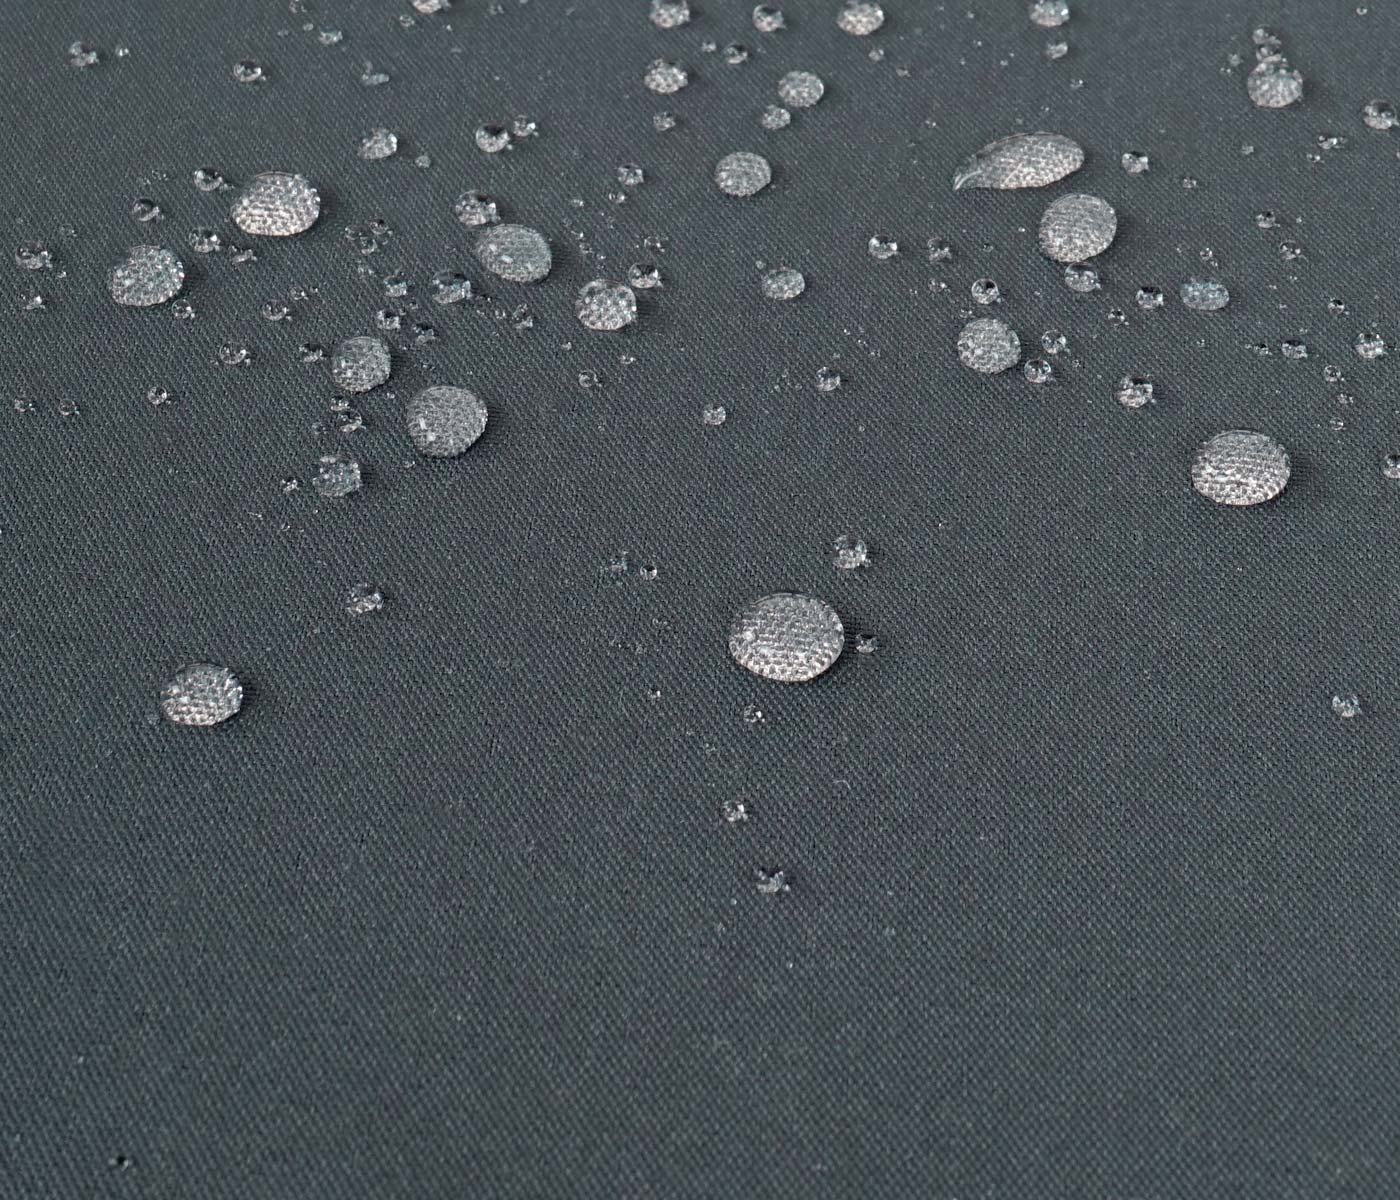 HWC-F57 Detailbild wasserabweisender Bezug